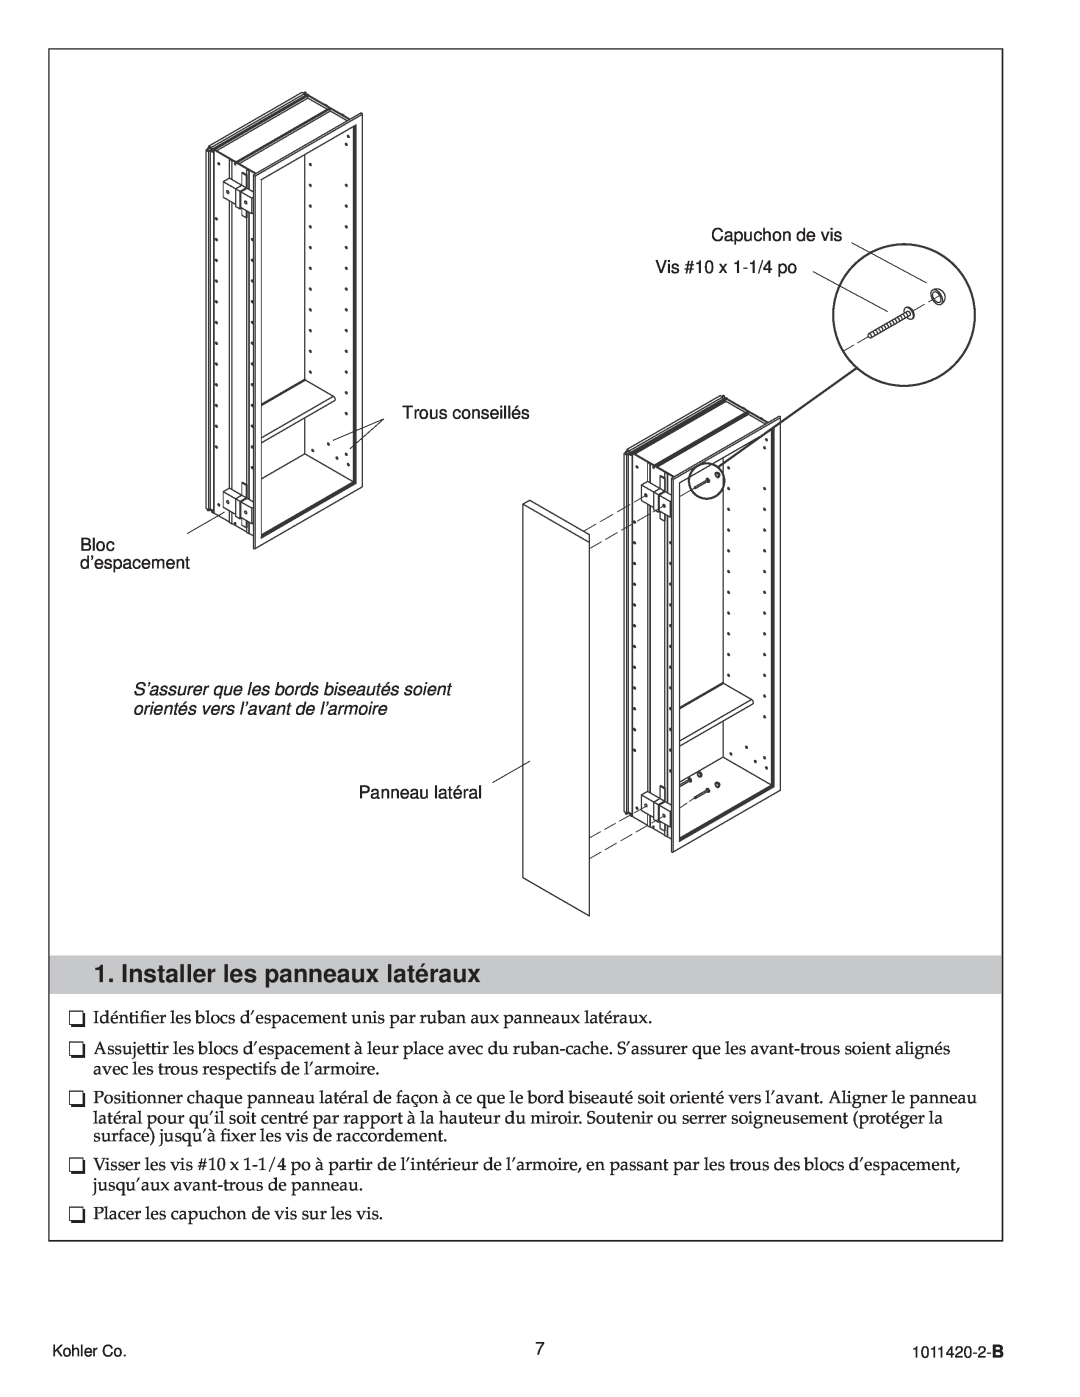 Kohler 1011420-2-B, K-3094 manual Installer les panneaux latéraux 